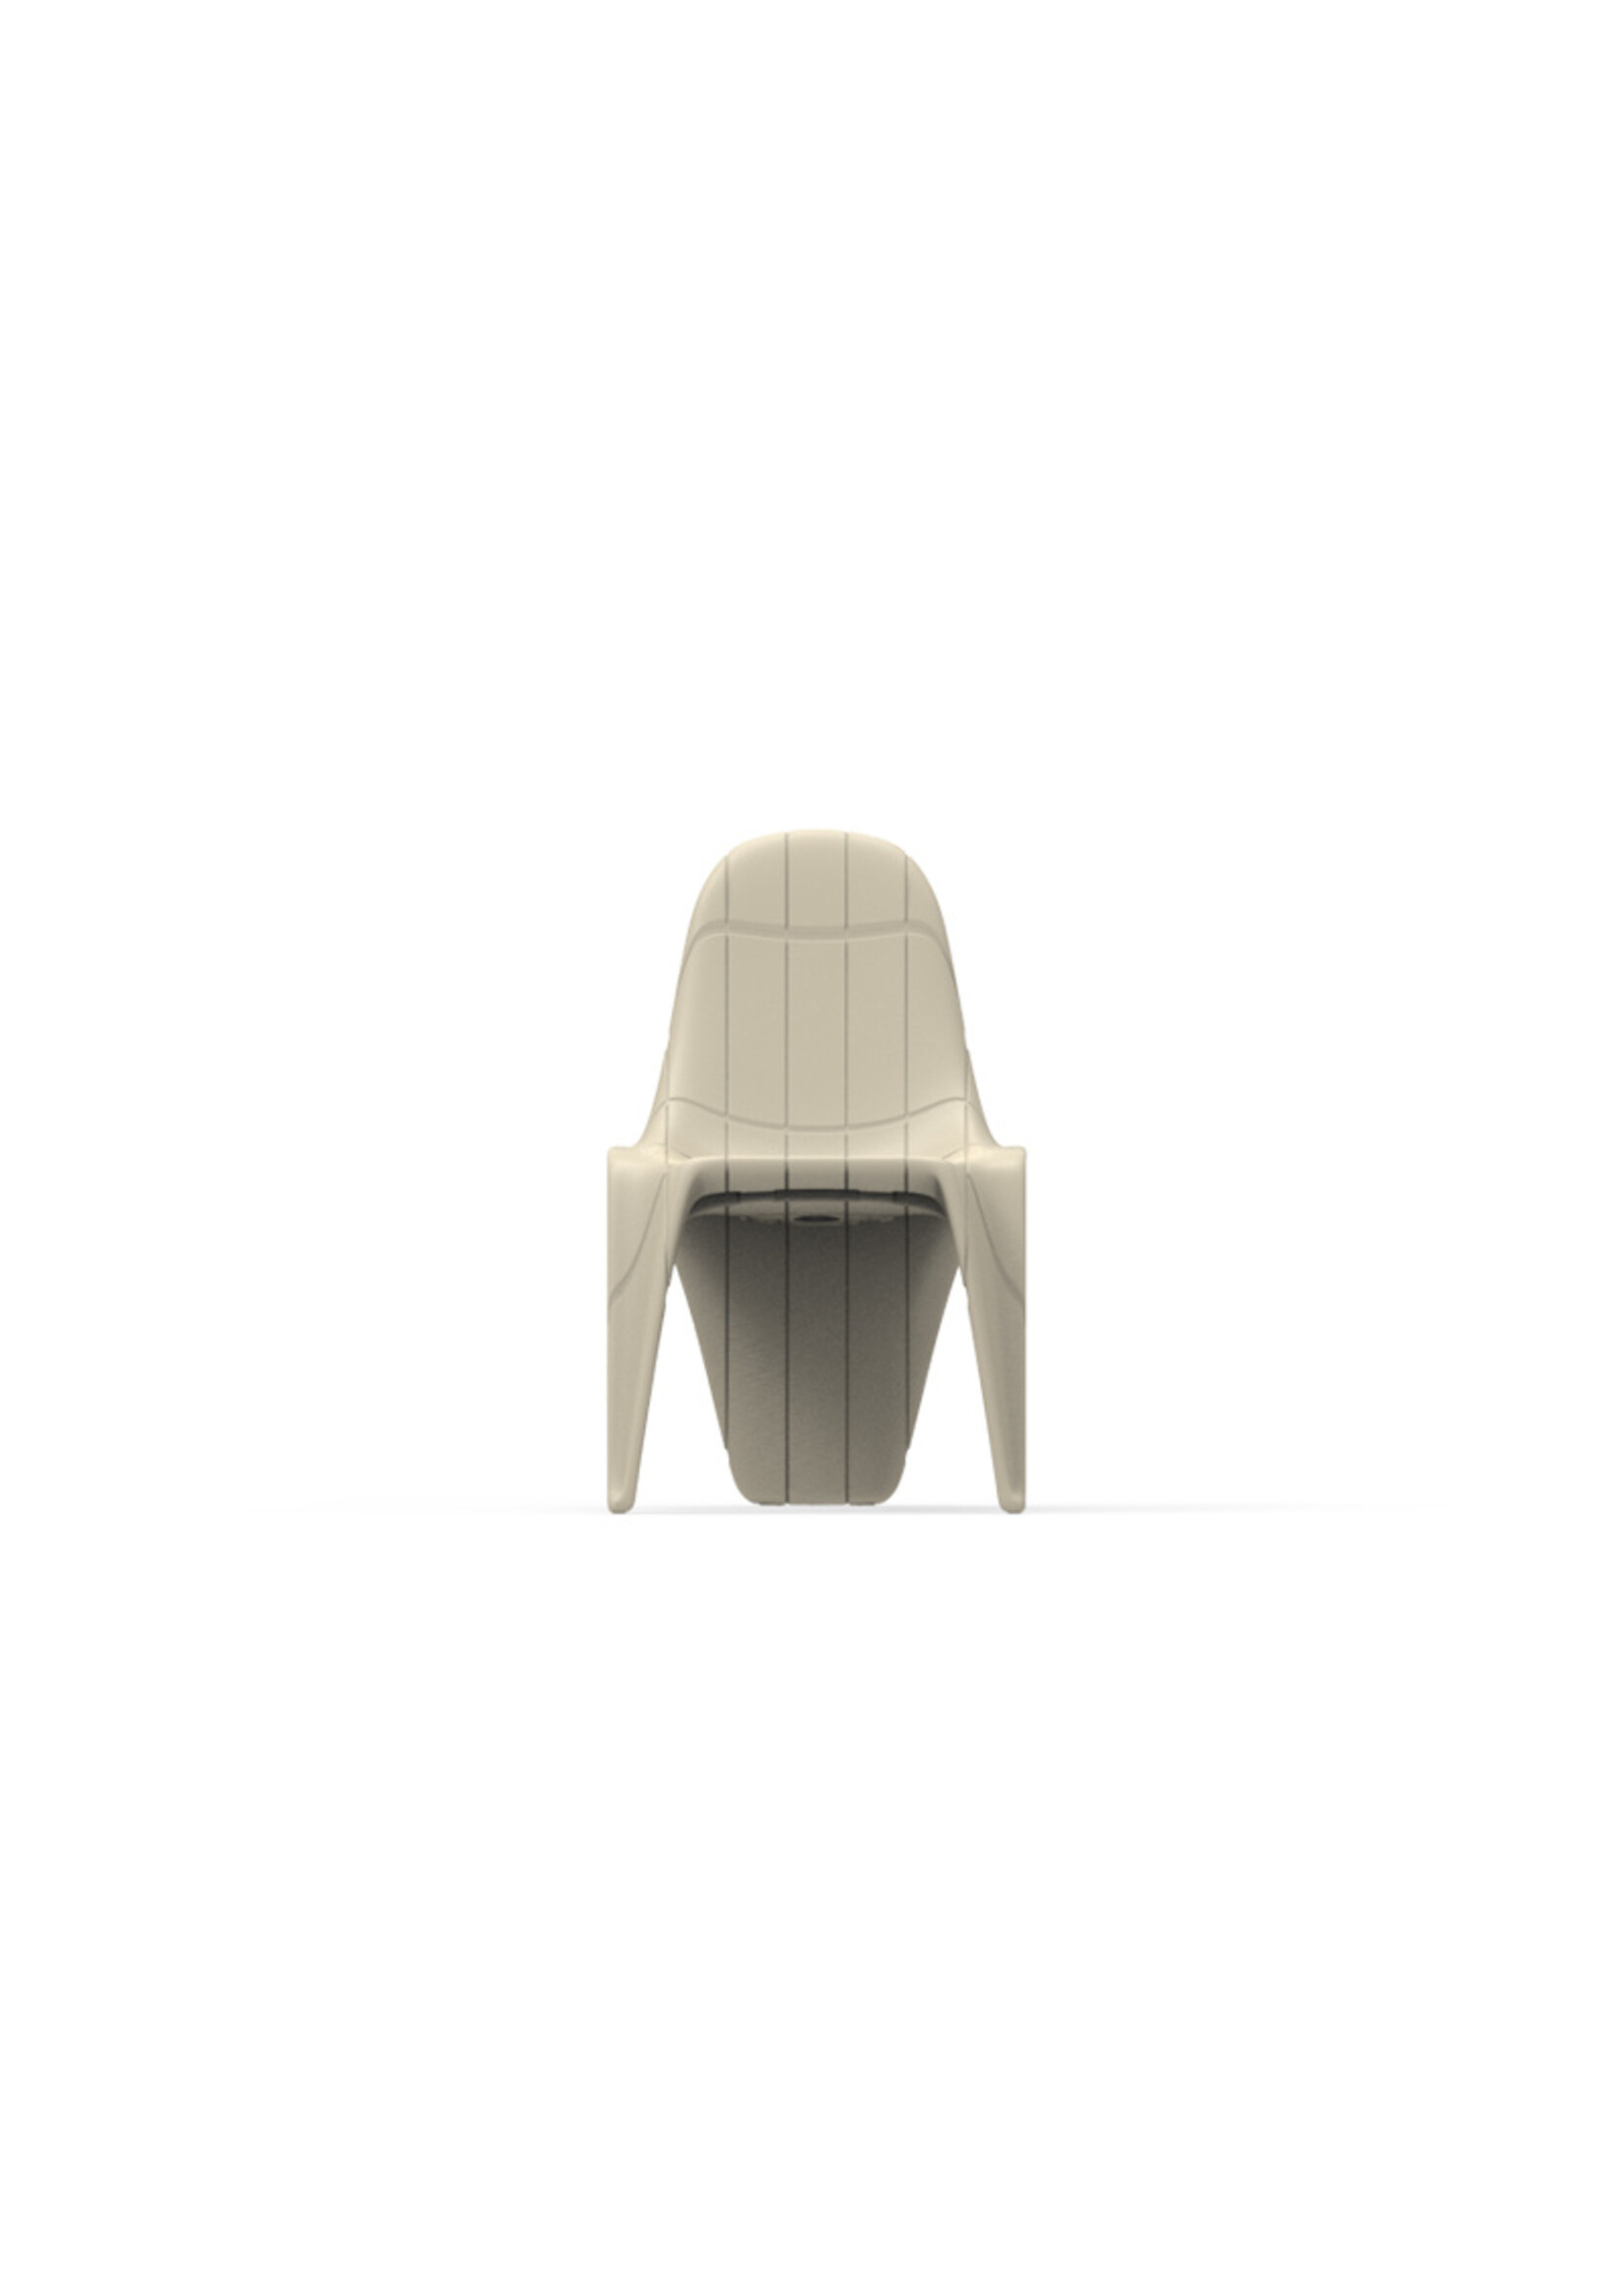 Vondom F3 Chair